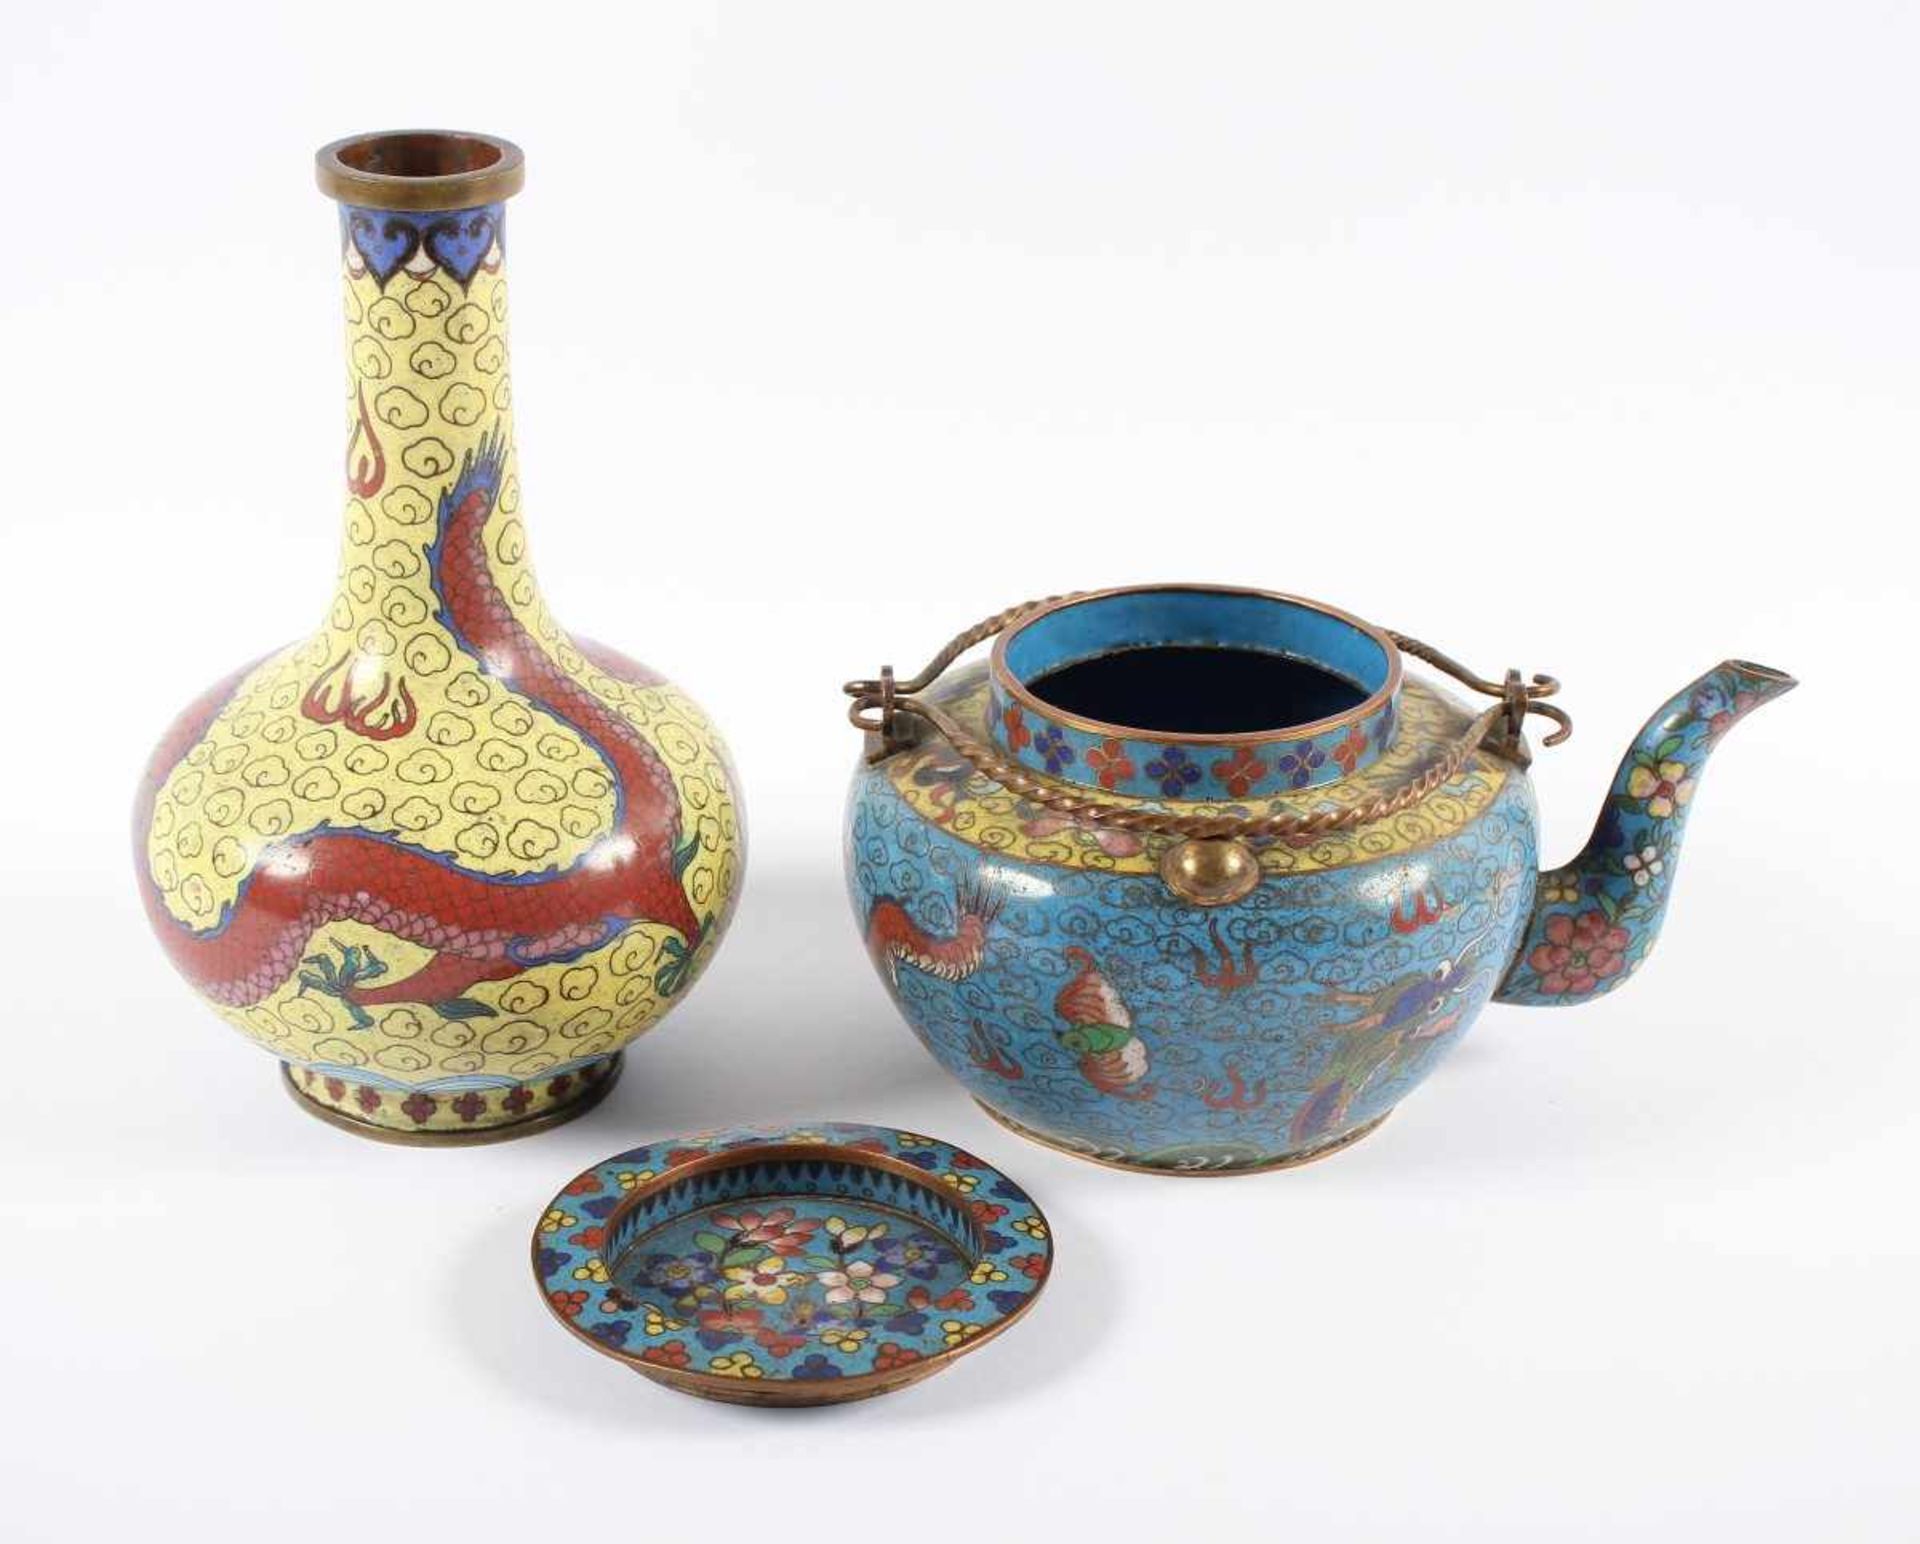 ZWEI CLOISONNÉ-OBJEKTE, Vase und Teekanne im farbigem Emailcloisonné dekoriert, H bis 18, besch. - Bild 2 aus 3